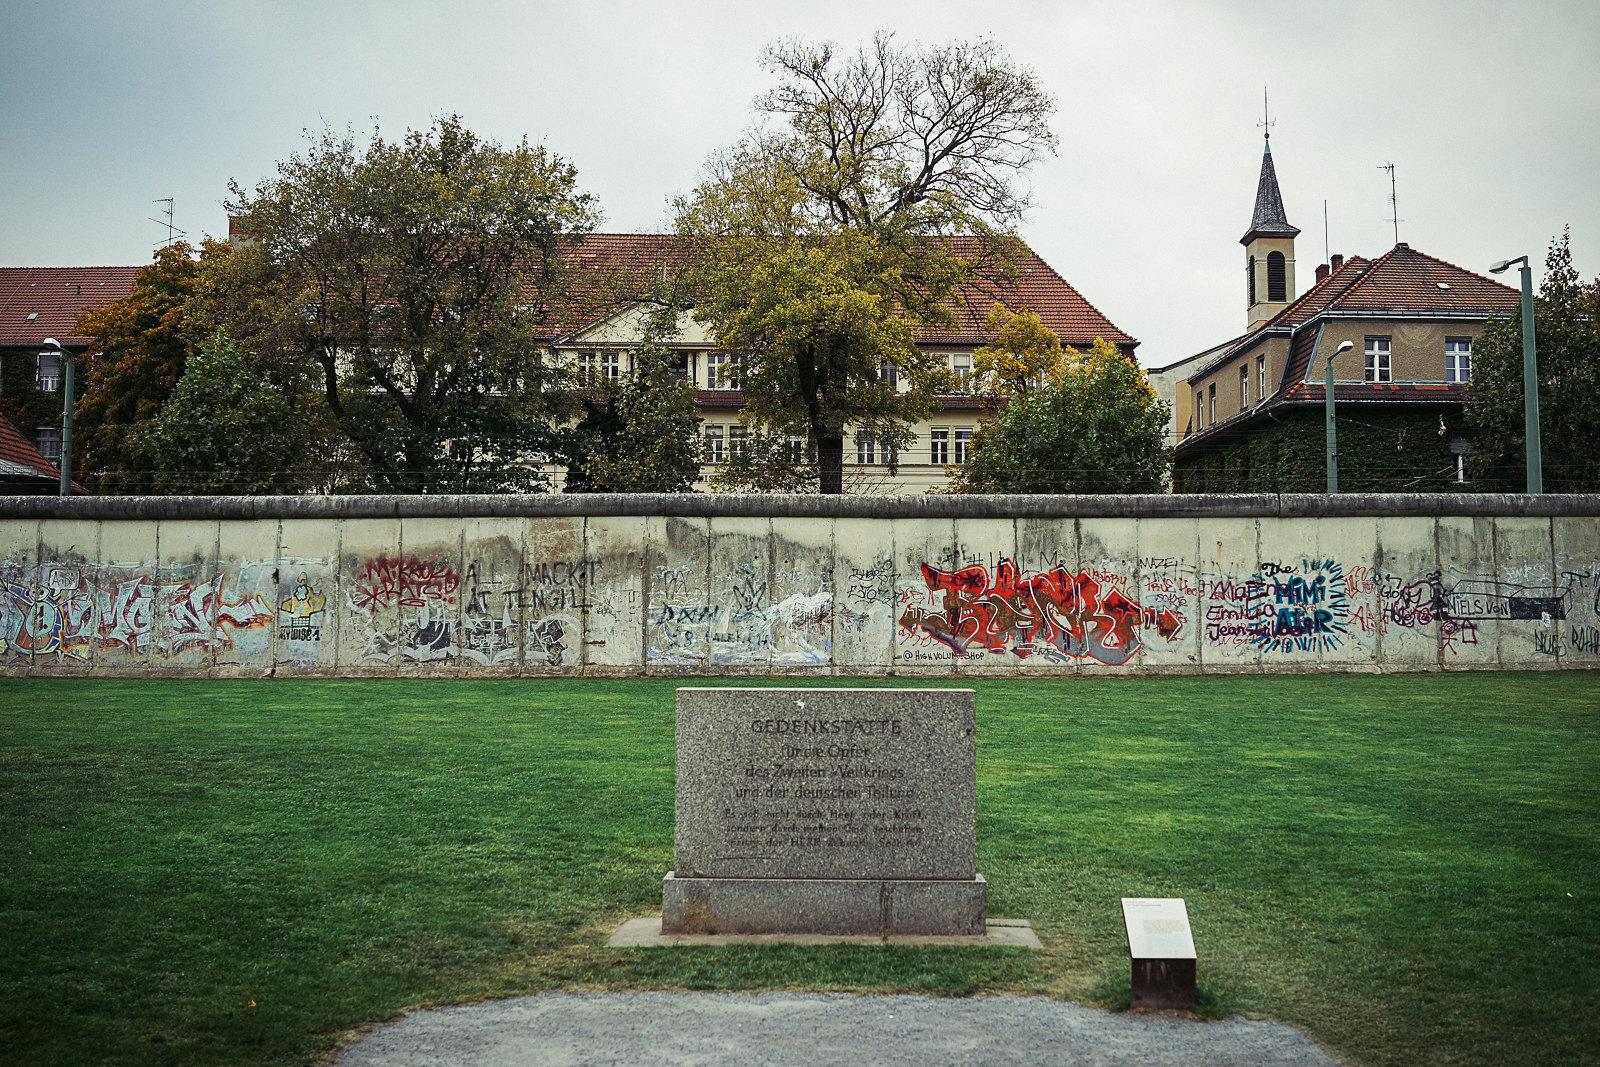 柏林墙遗址纪念公园